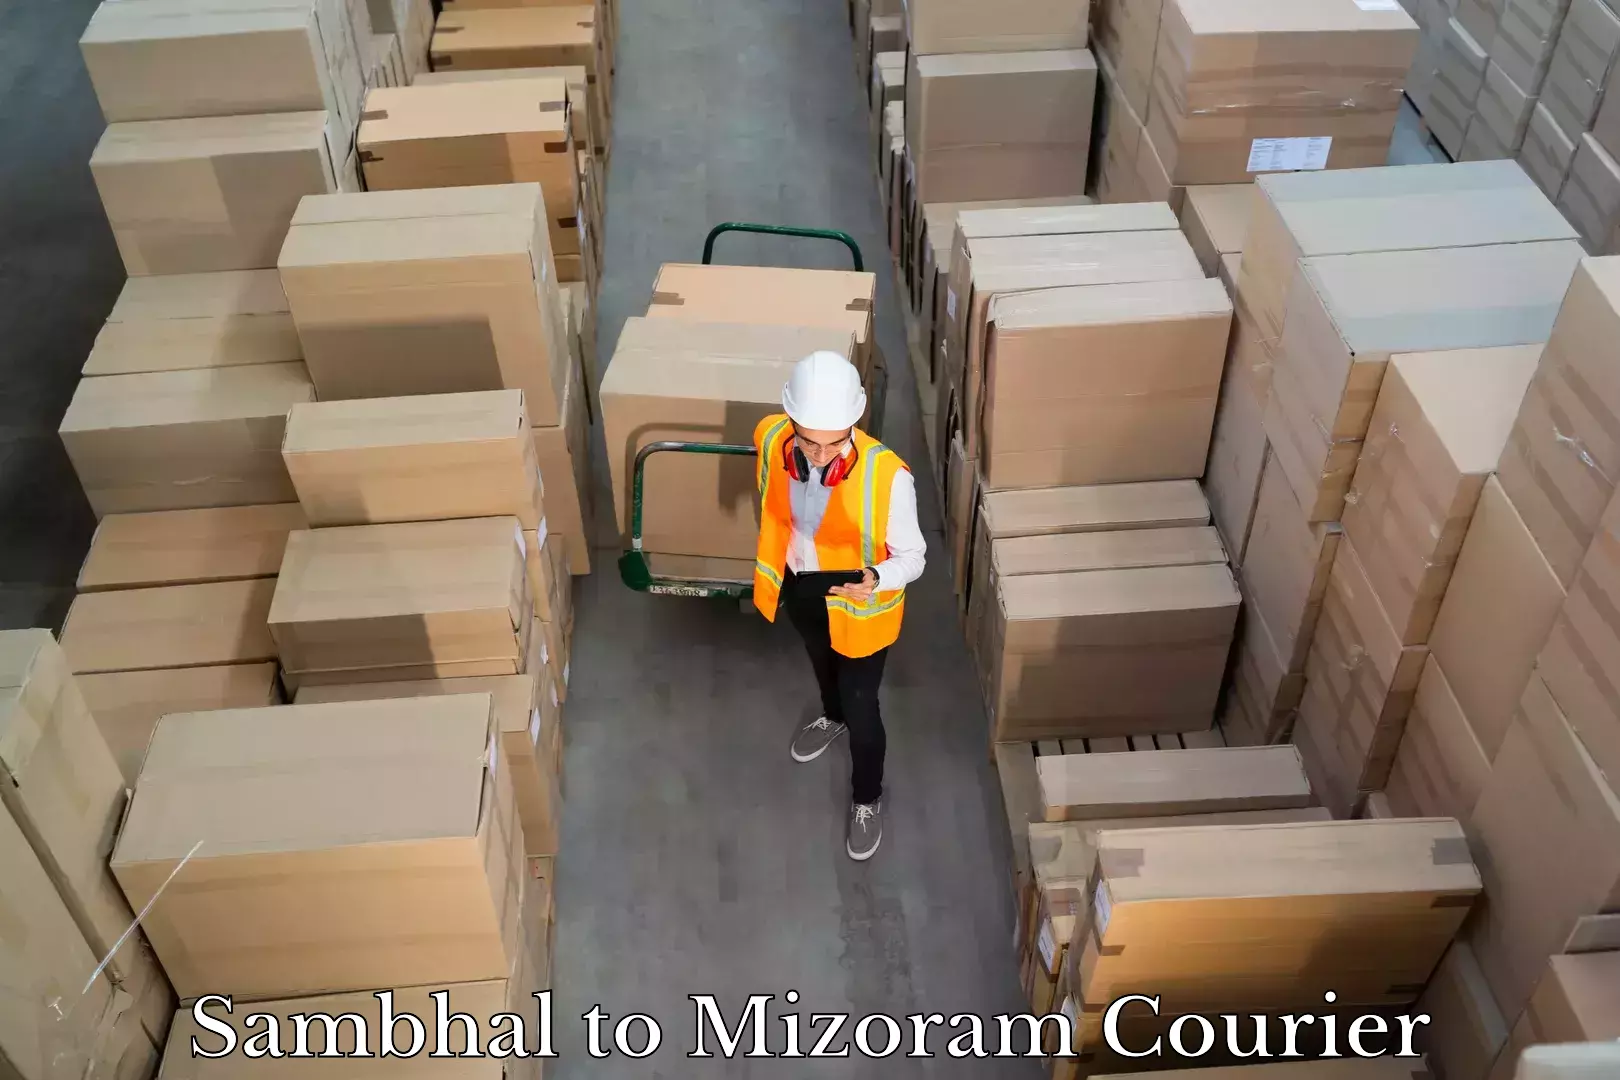 Luggage shipment specialists Sambhal to Mizoram